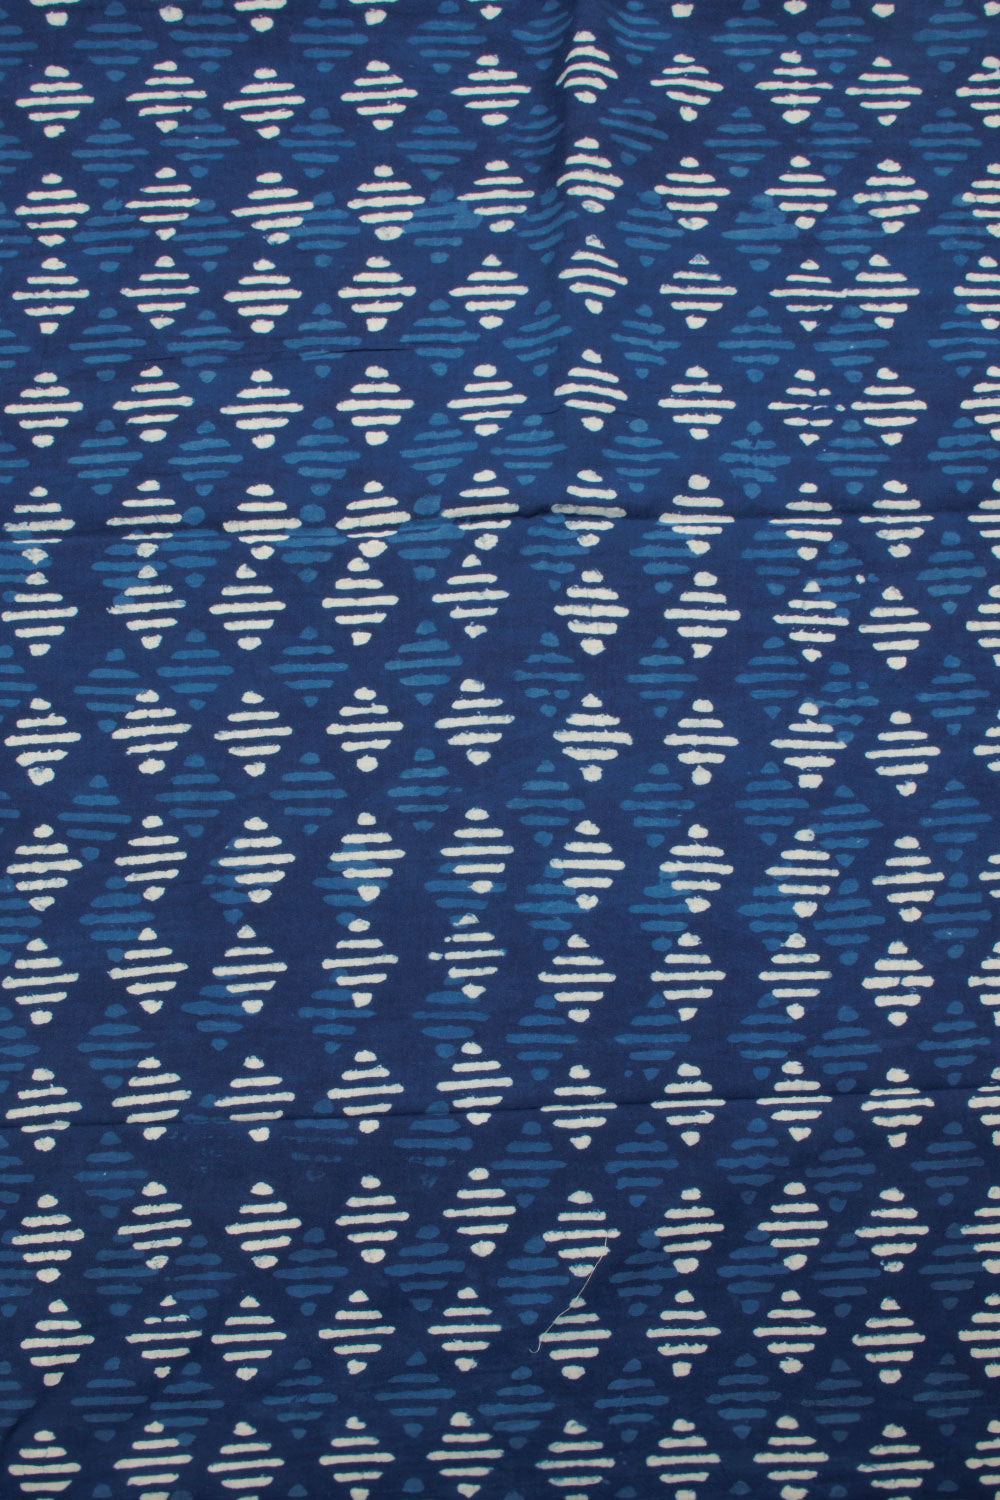 Dabu Printed Cotton Salwar Suit Material - Avishya